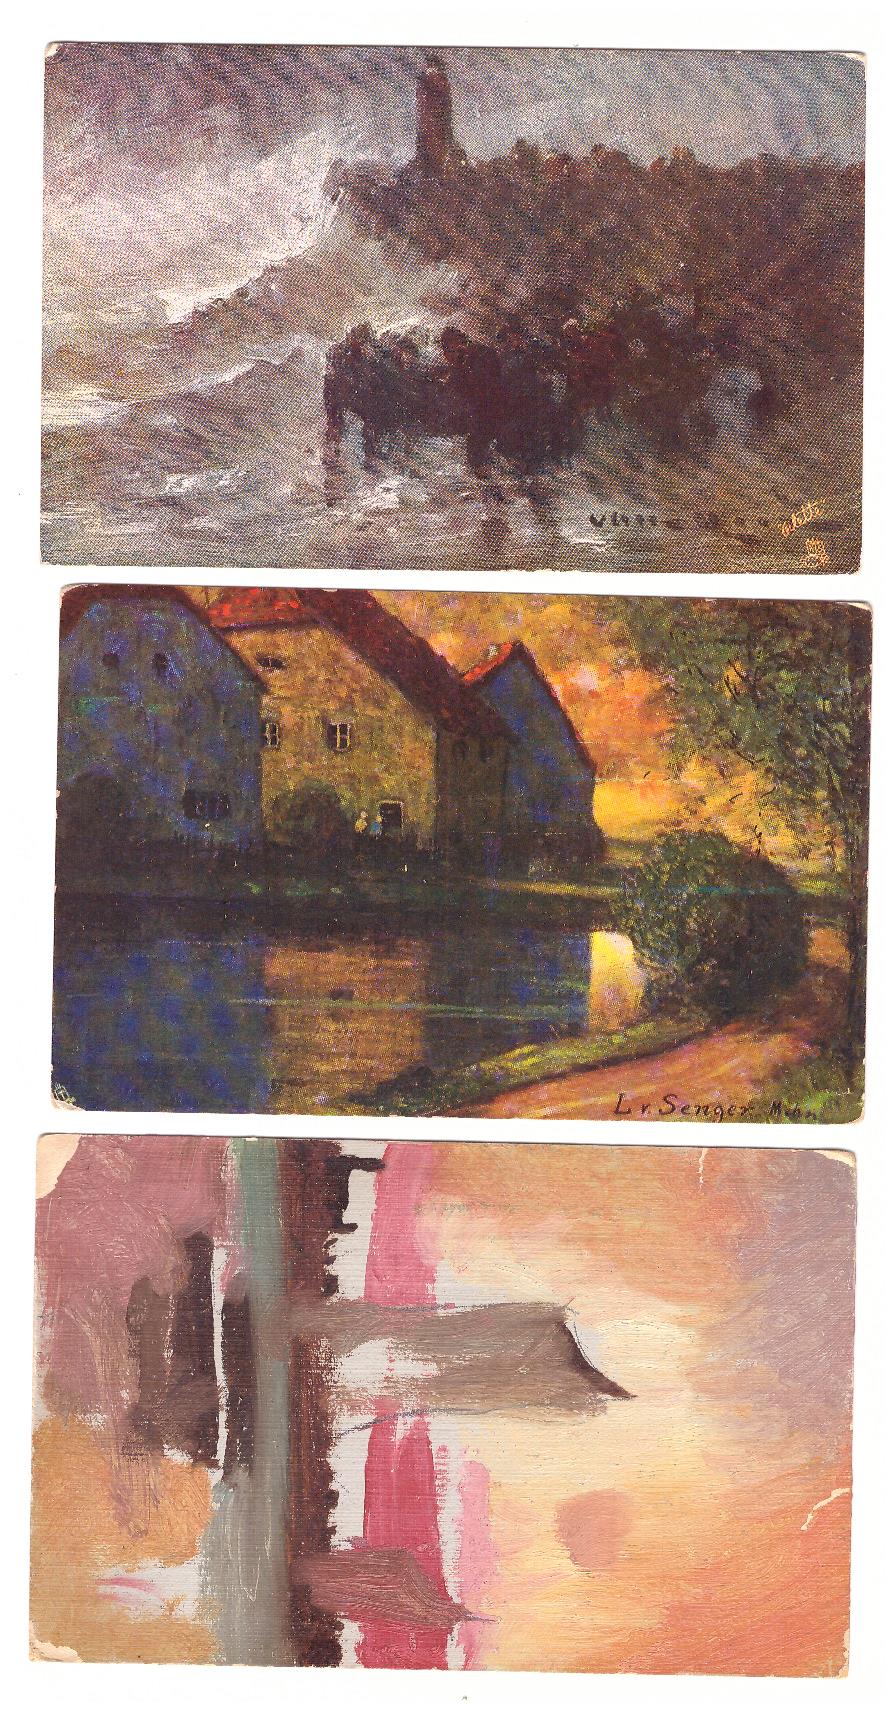 Lote de 3 Postales de Arte. Dos Inglesas y una Francesa anterior a 1905